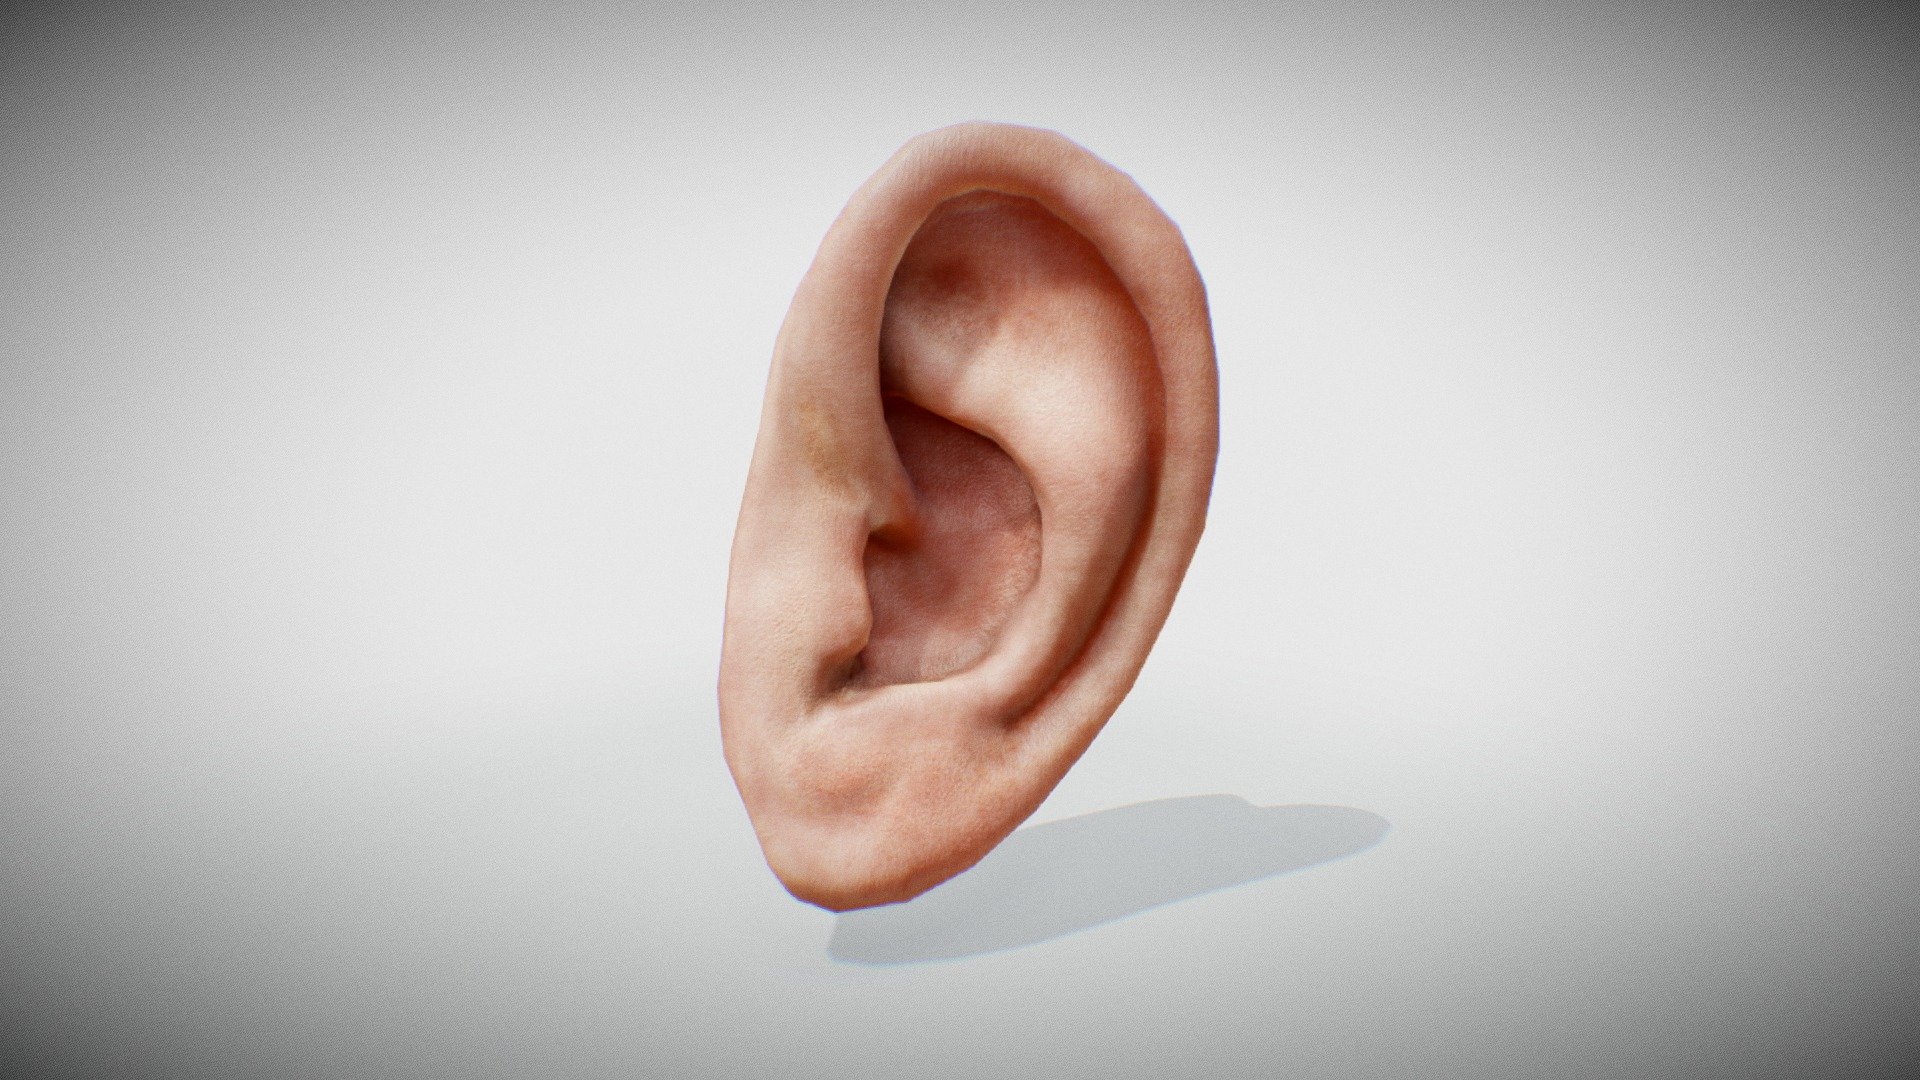 Ear - Ear Model - 3D model by Arturs (@Arturiks) 3d model